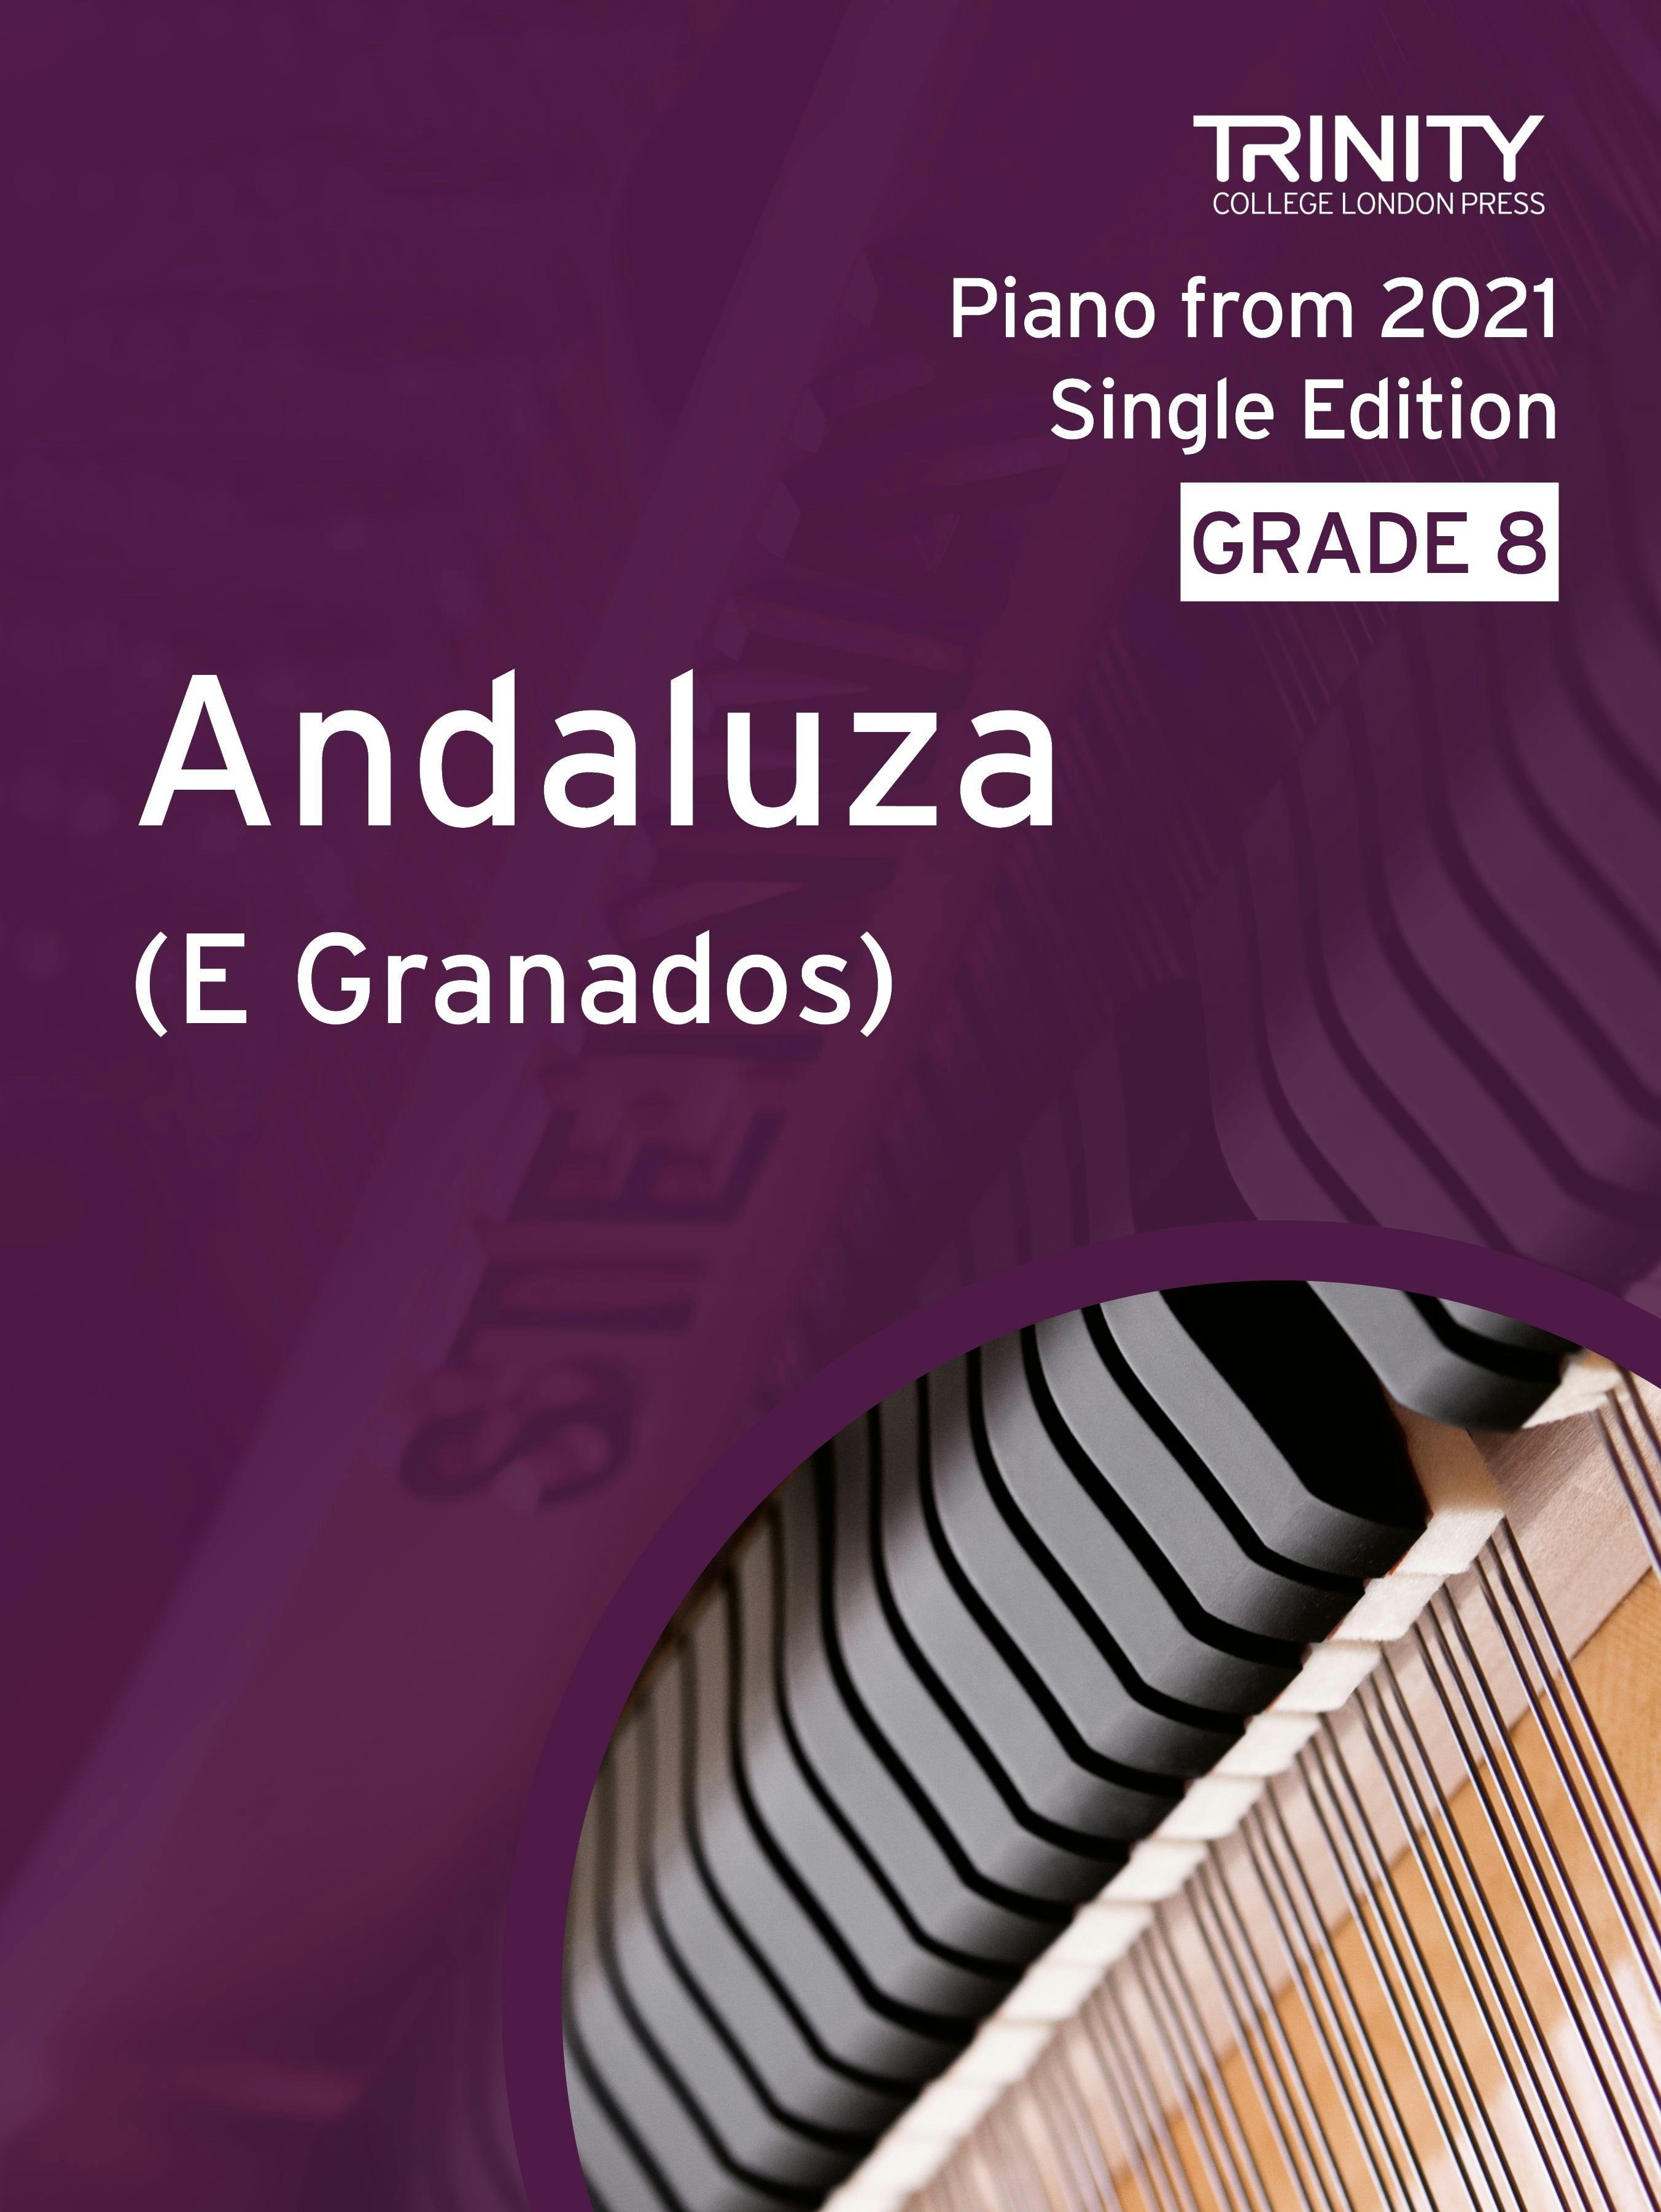 Andaluza (no. 5 from Danzas españolas) - Granados (Grade 8 Piano) - ebook